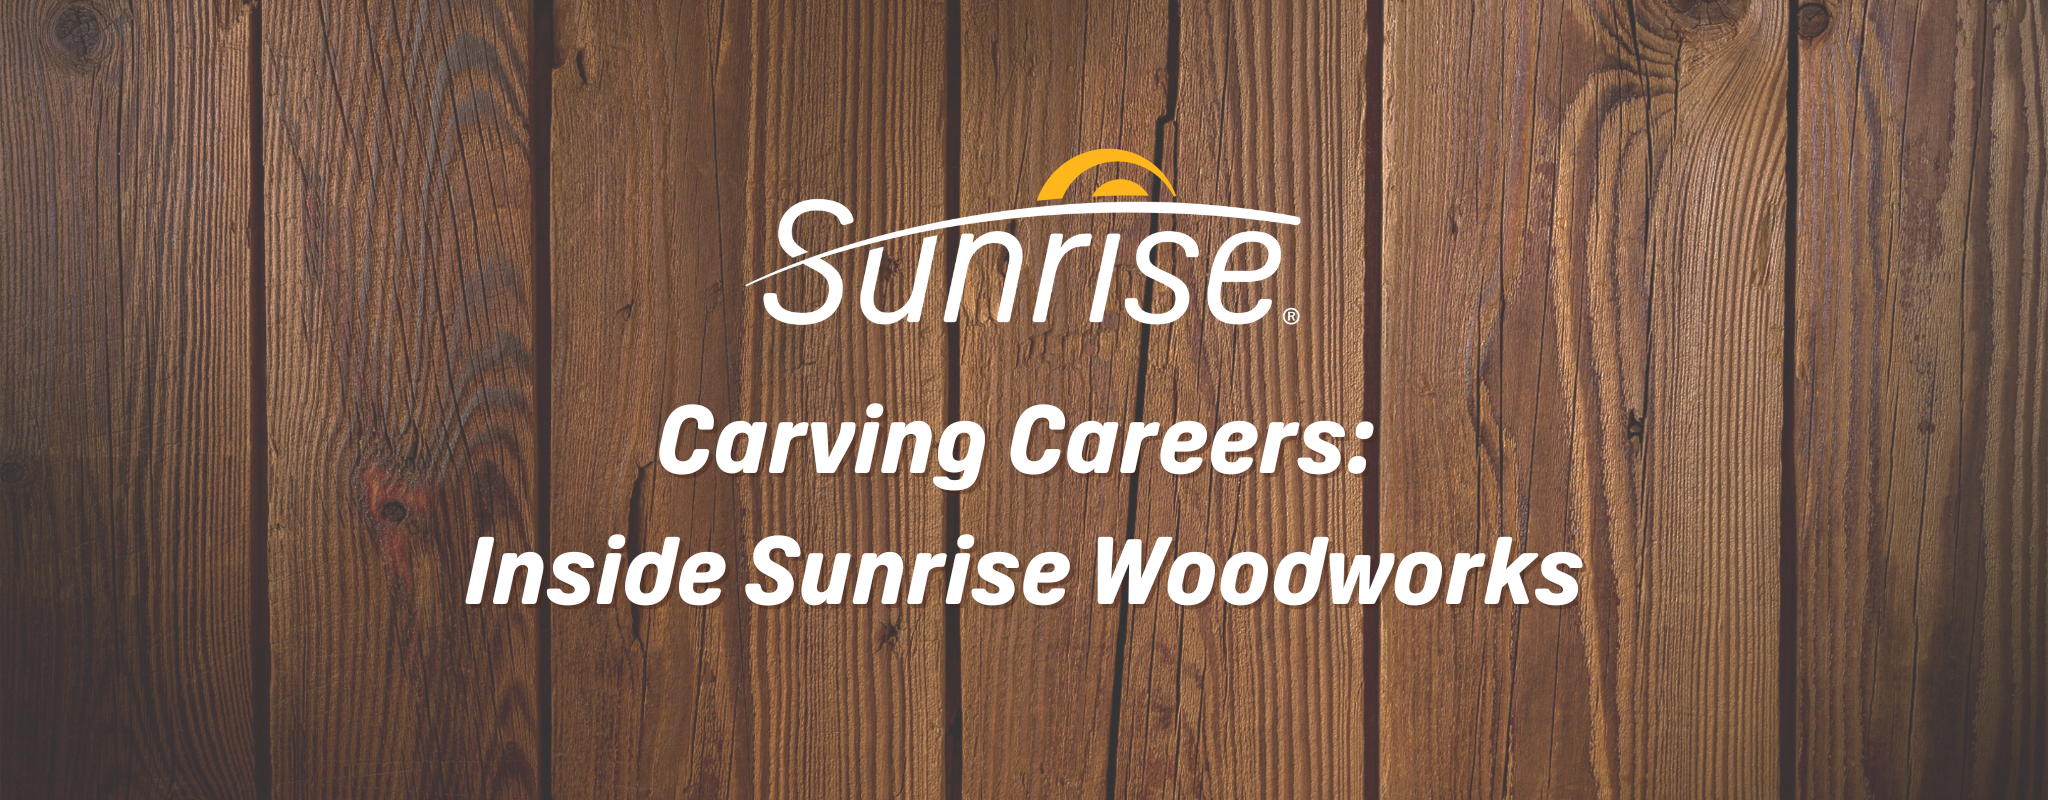 Hình ảnh biểu ngữ với nền gỗ. Logo Sunrise và tiêu đề "Carving Careers: Inside Sunrise Woodworks" có màu trắng trên nền.